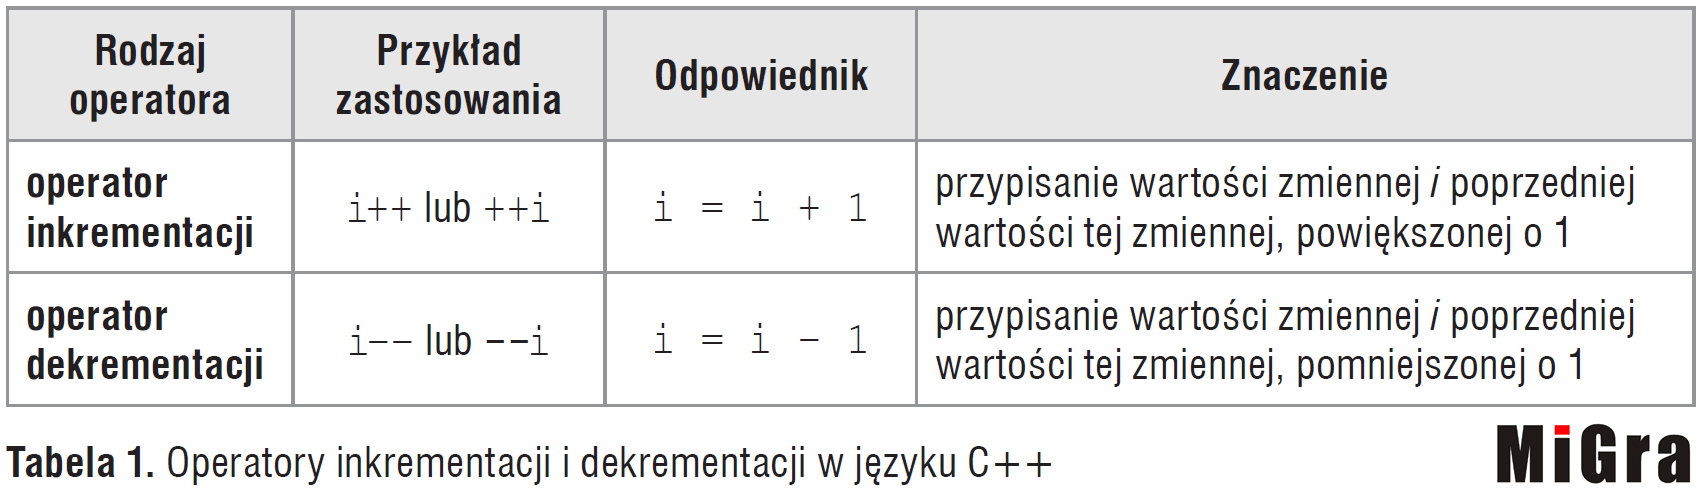 Operatory inkrementacji i dekrementacji w języku C++